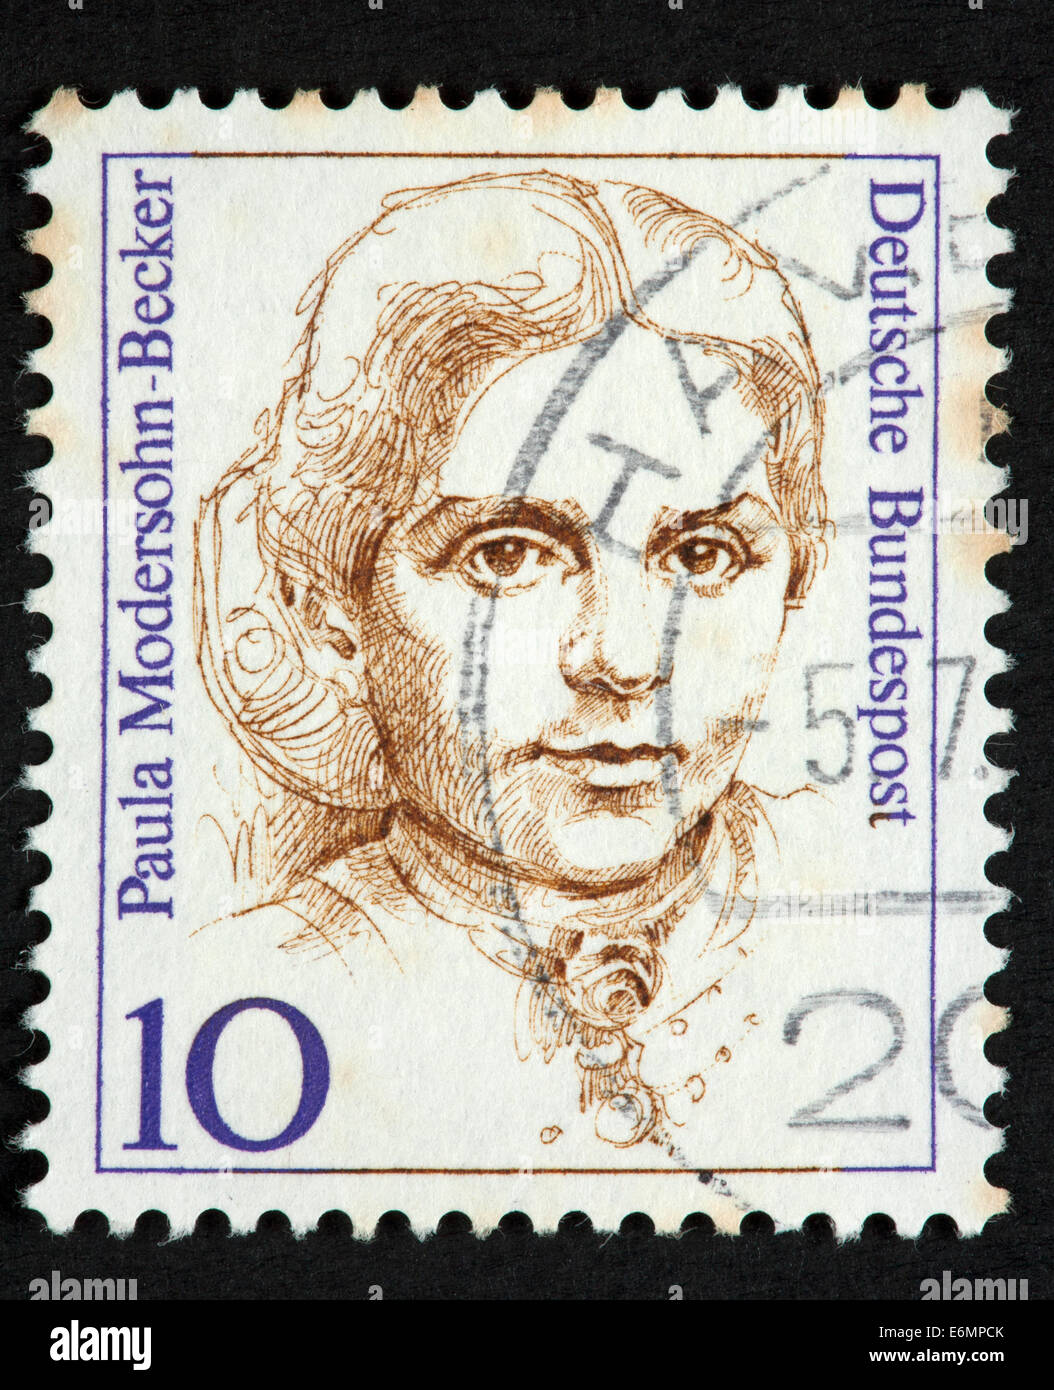 Deutsche Briefmarke Stockfoto Bild 72986051 Alamy